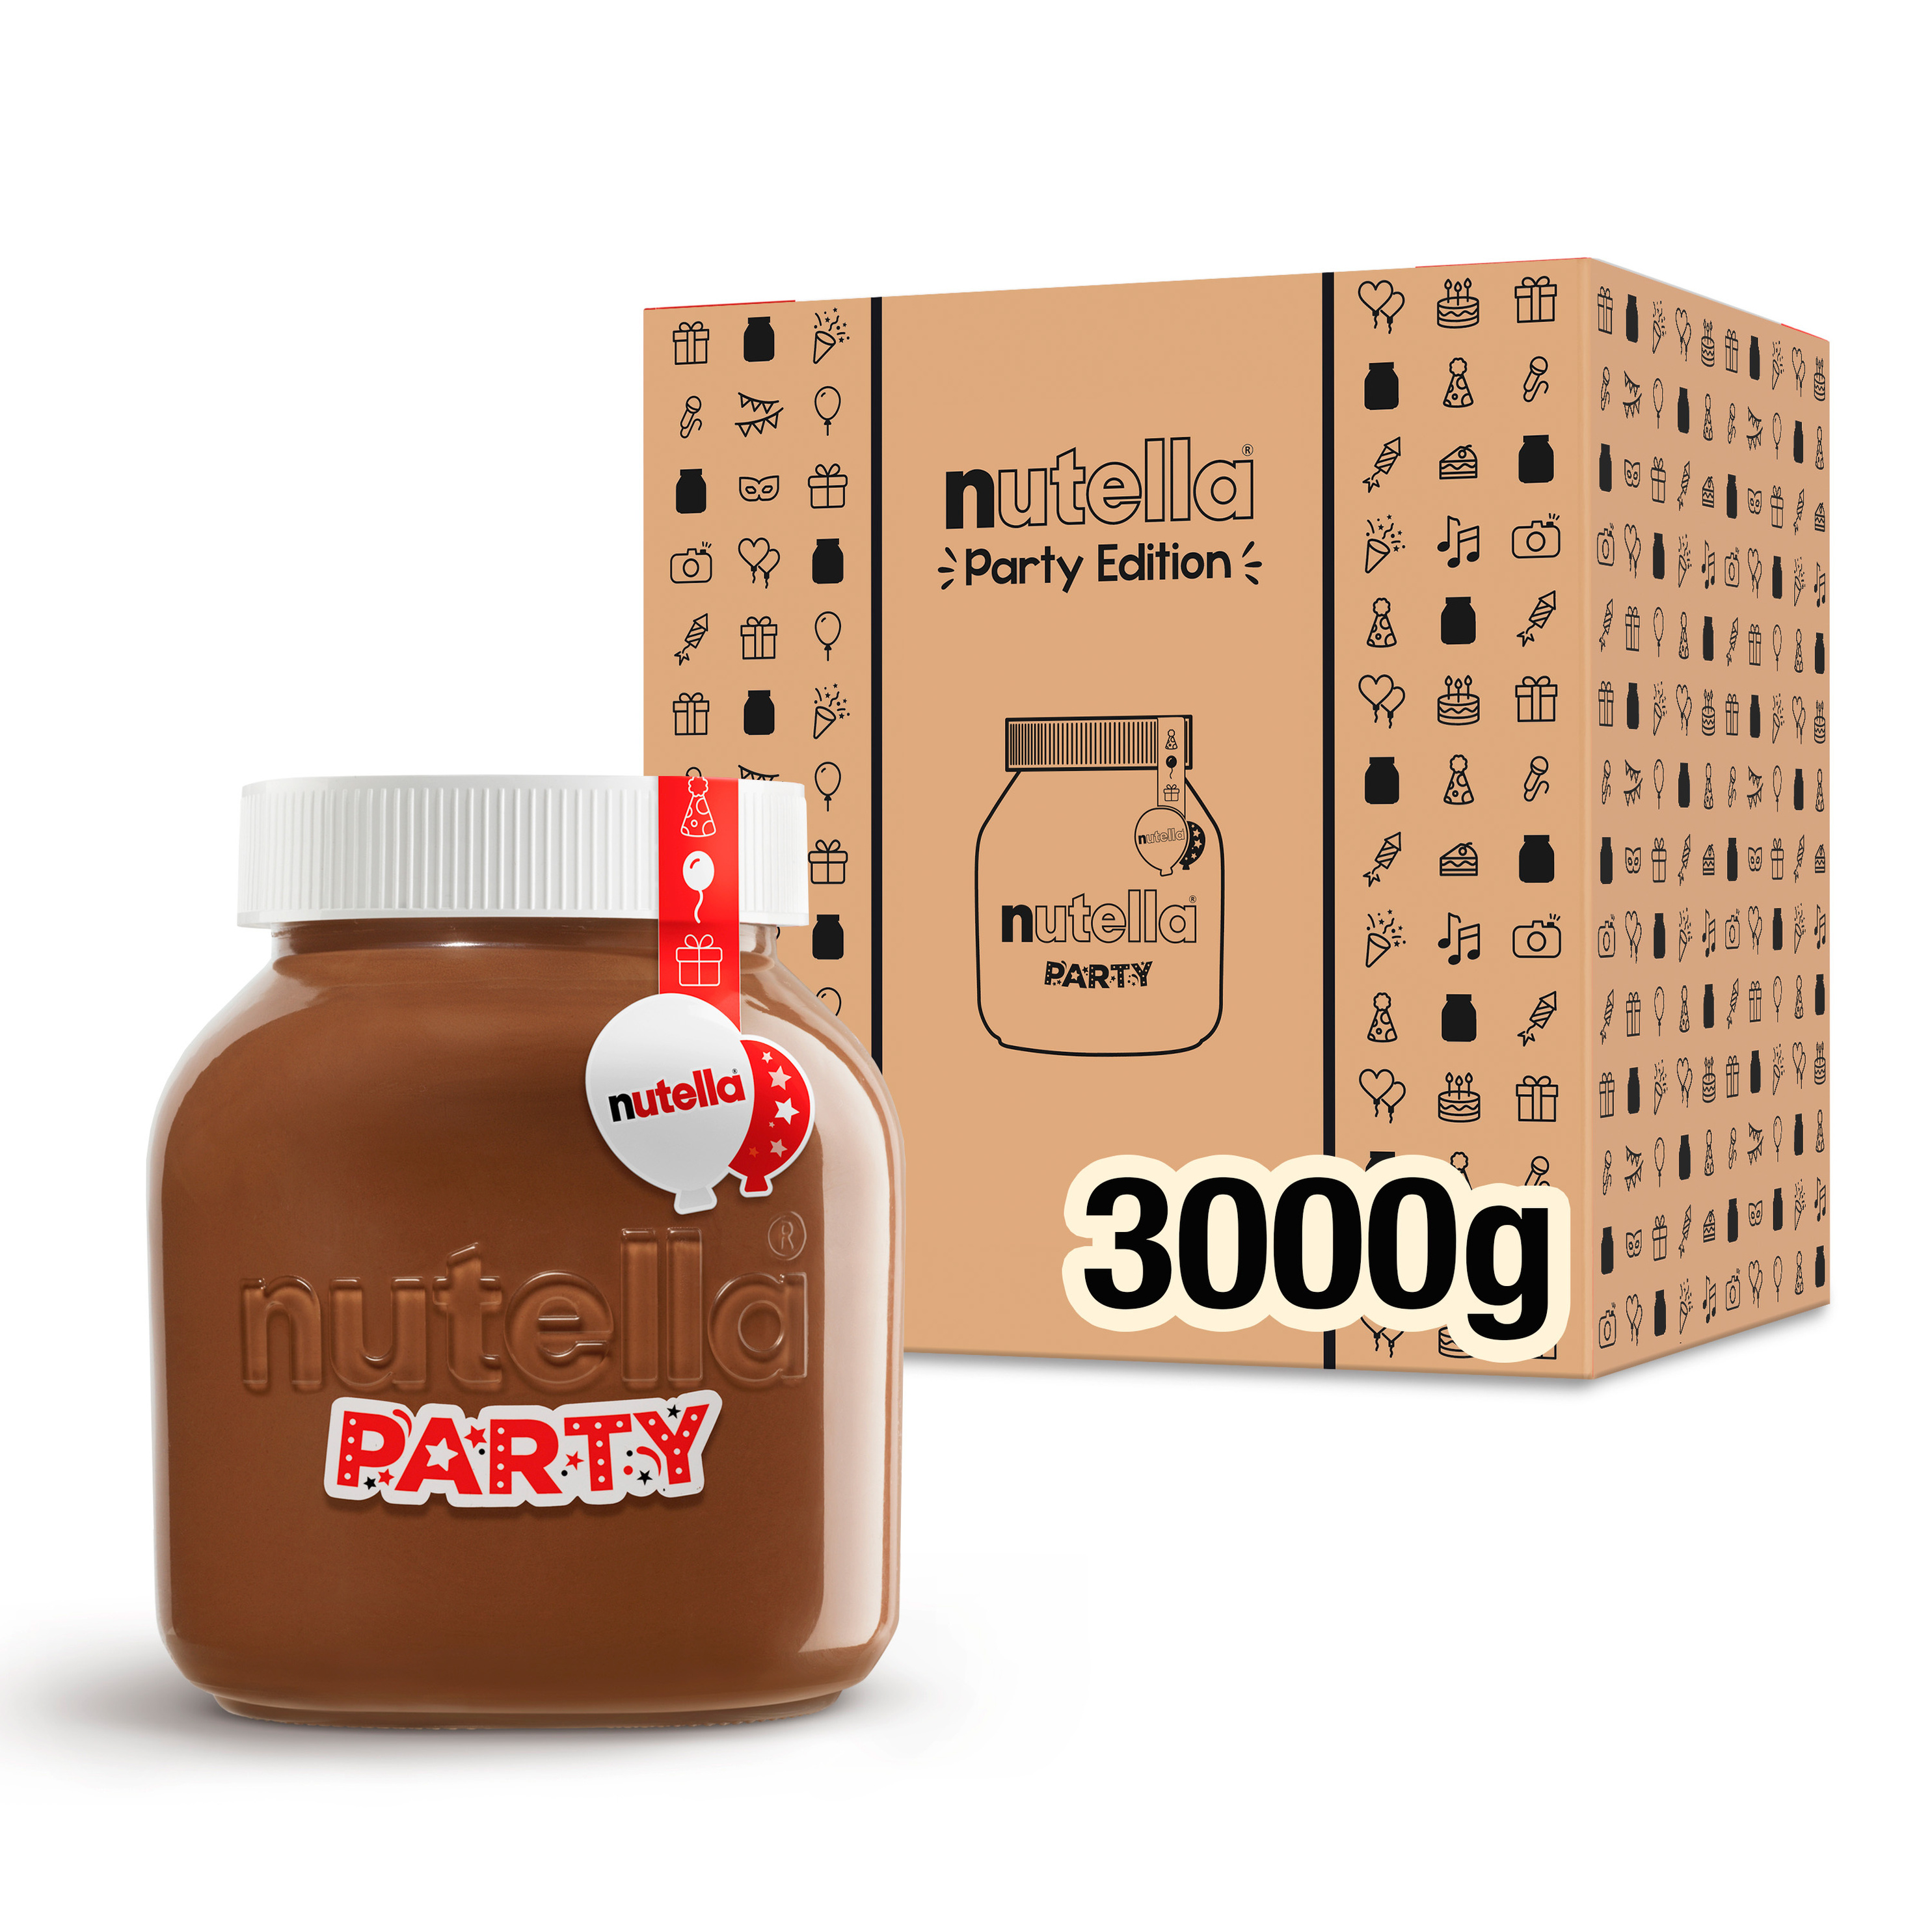 nutella Party Edition 3 kg Glas jetzt bei Weltbild.ch bestellen